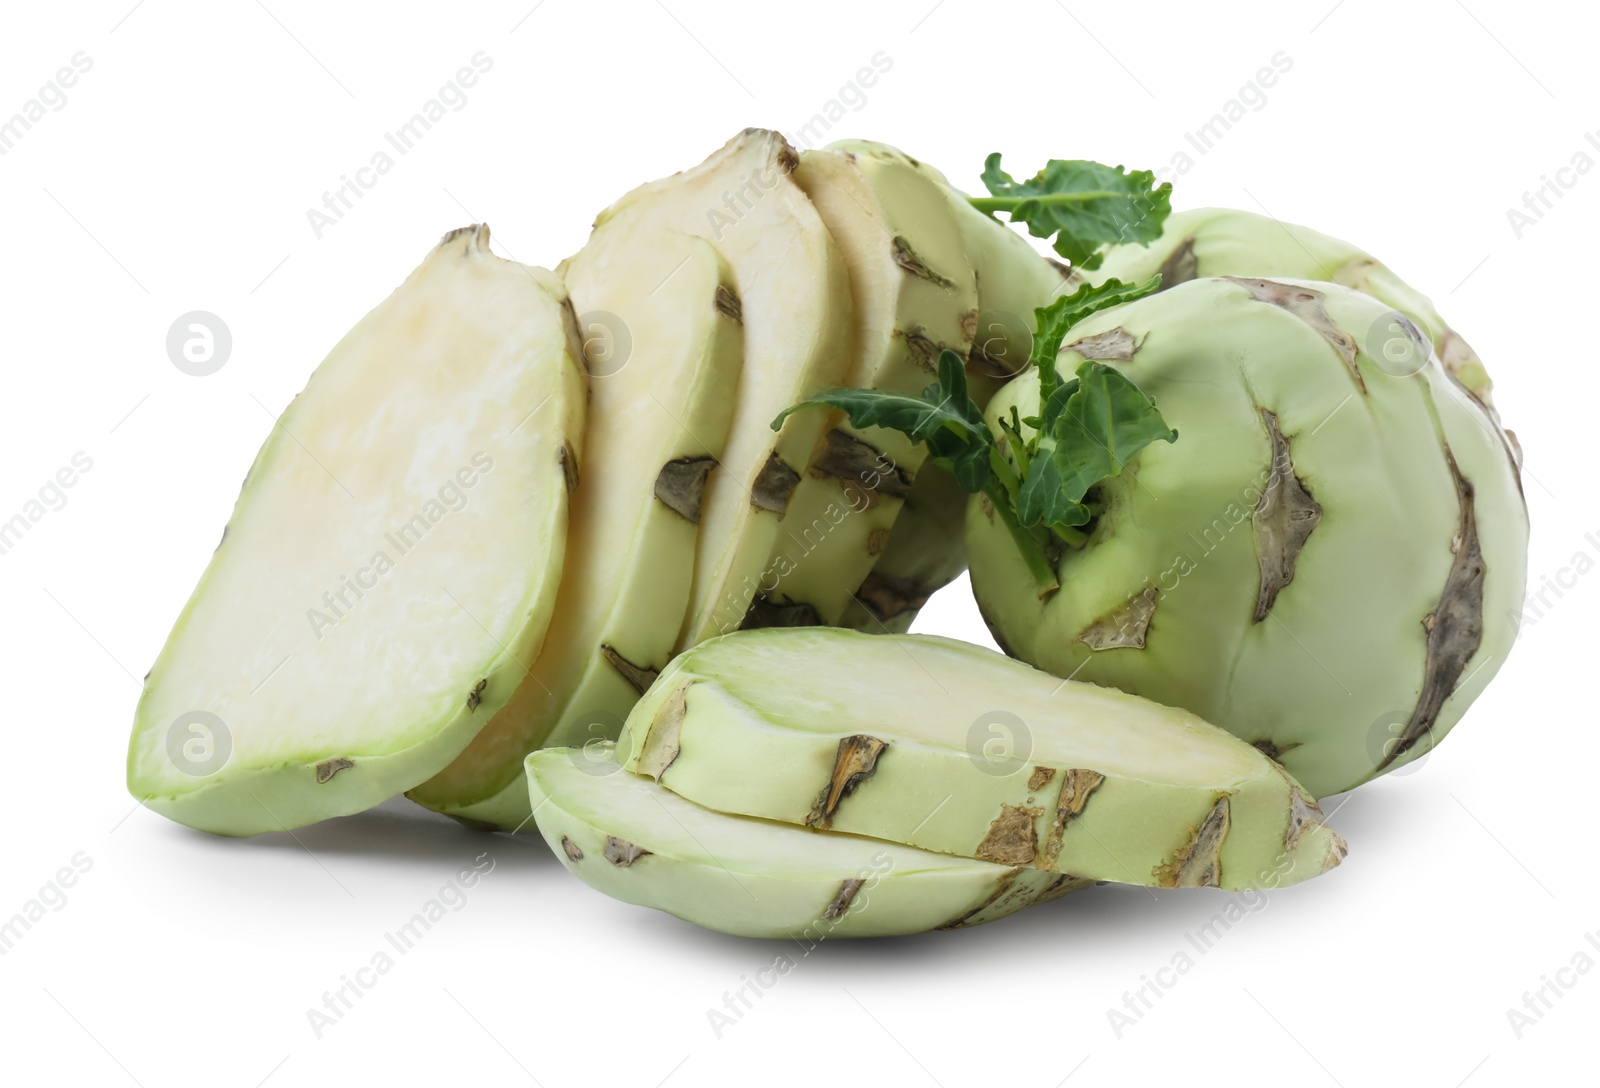 Photo of Fresh cut kohlrabi cabbage on white background